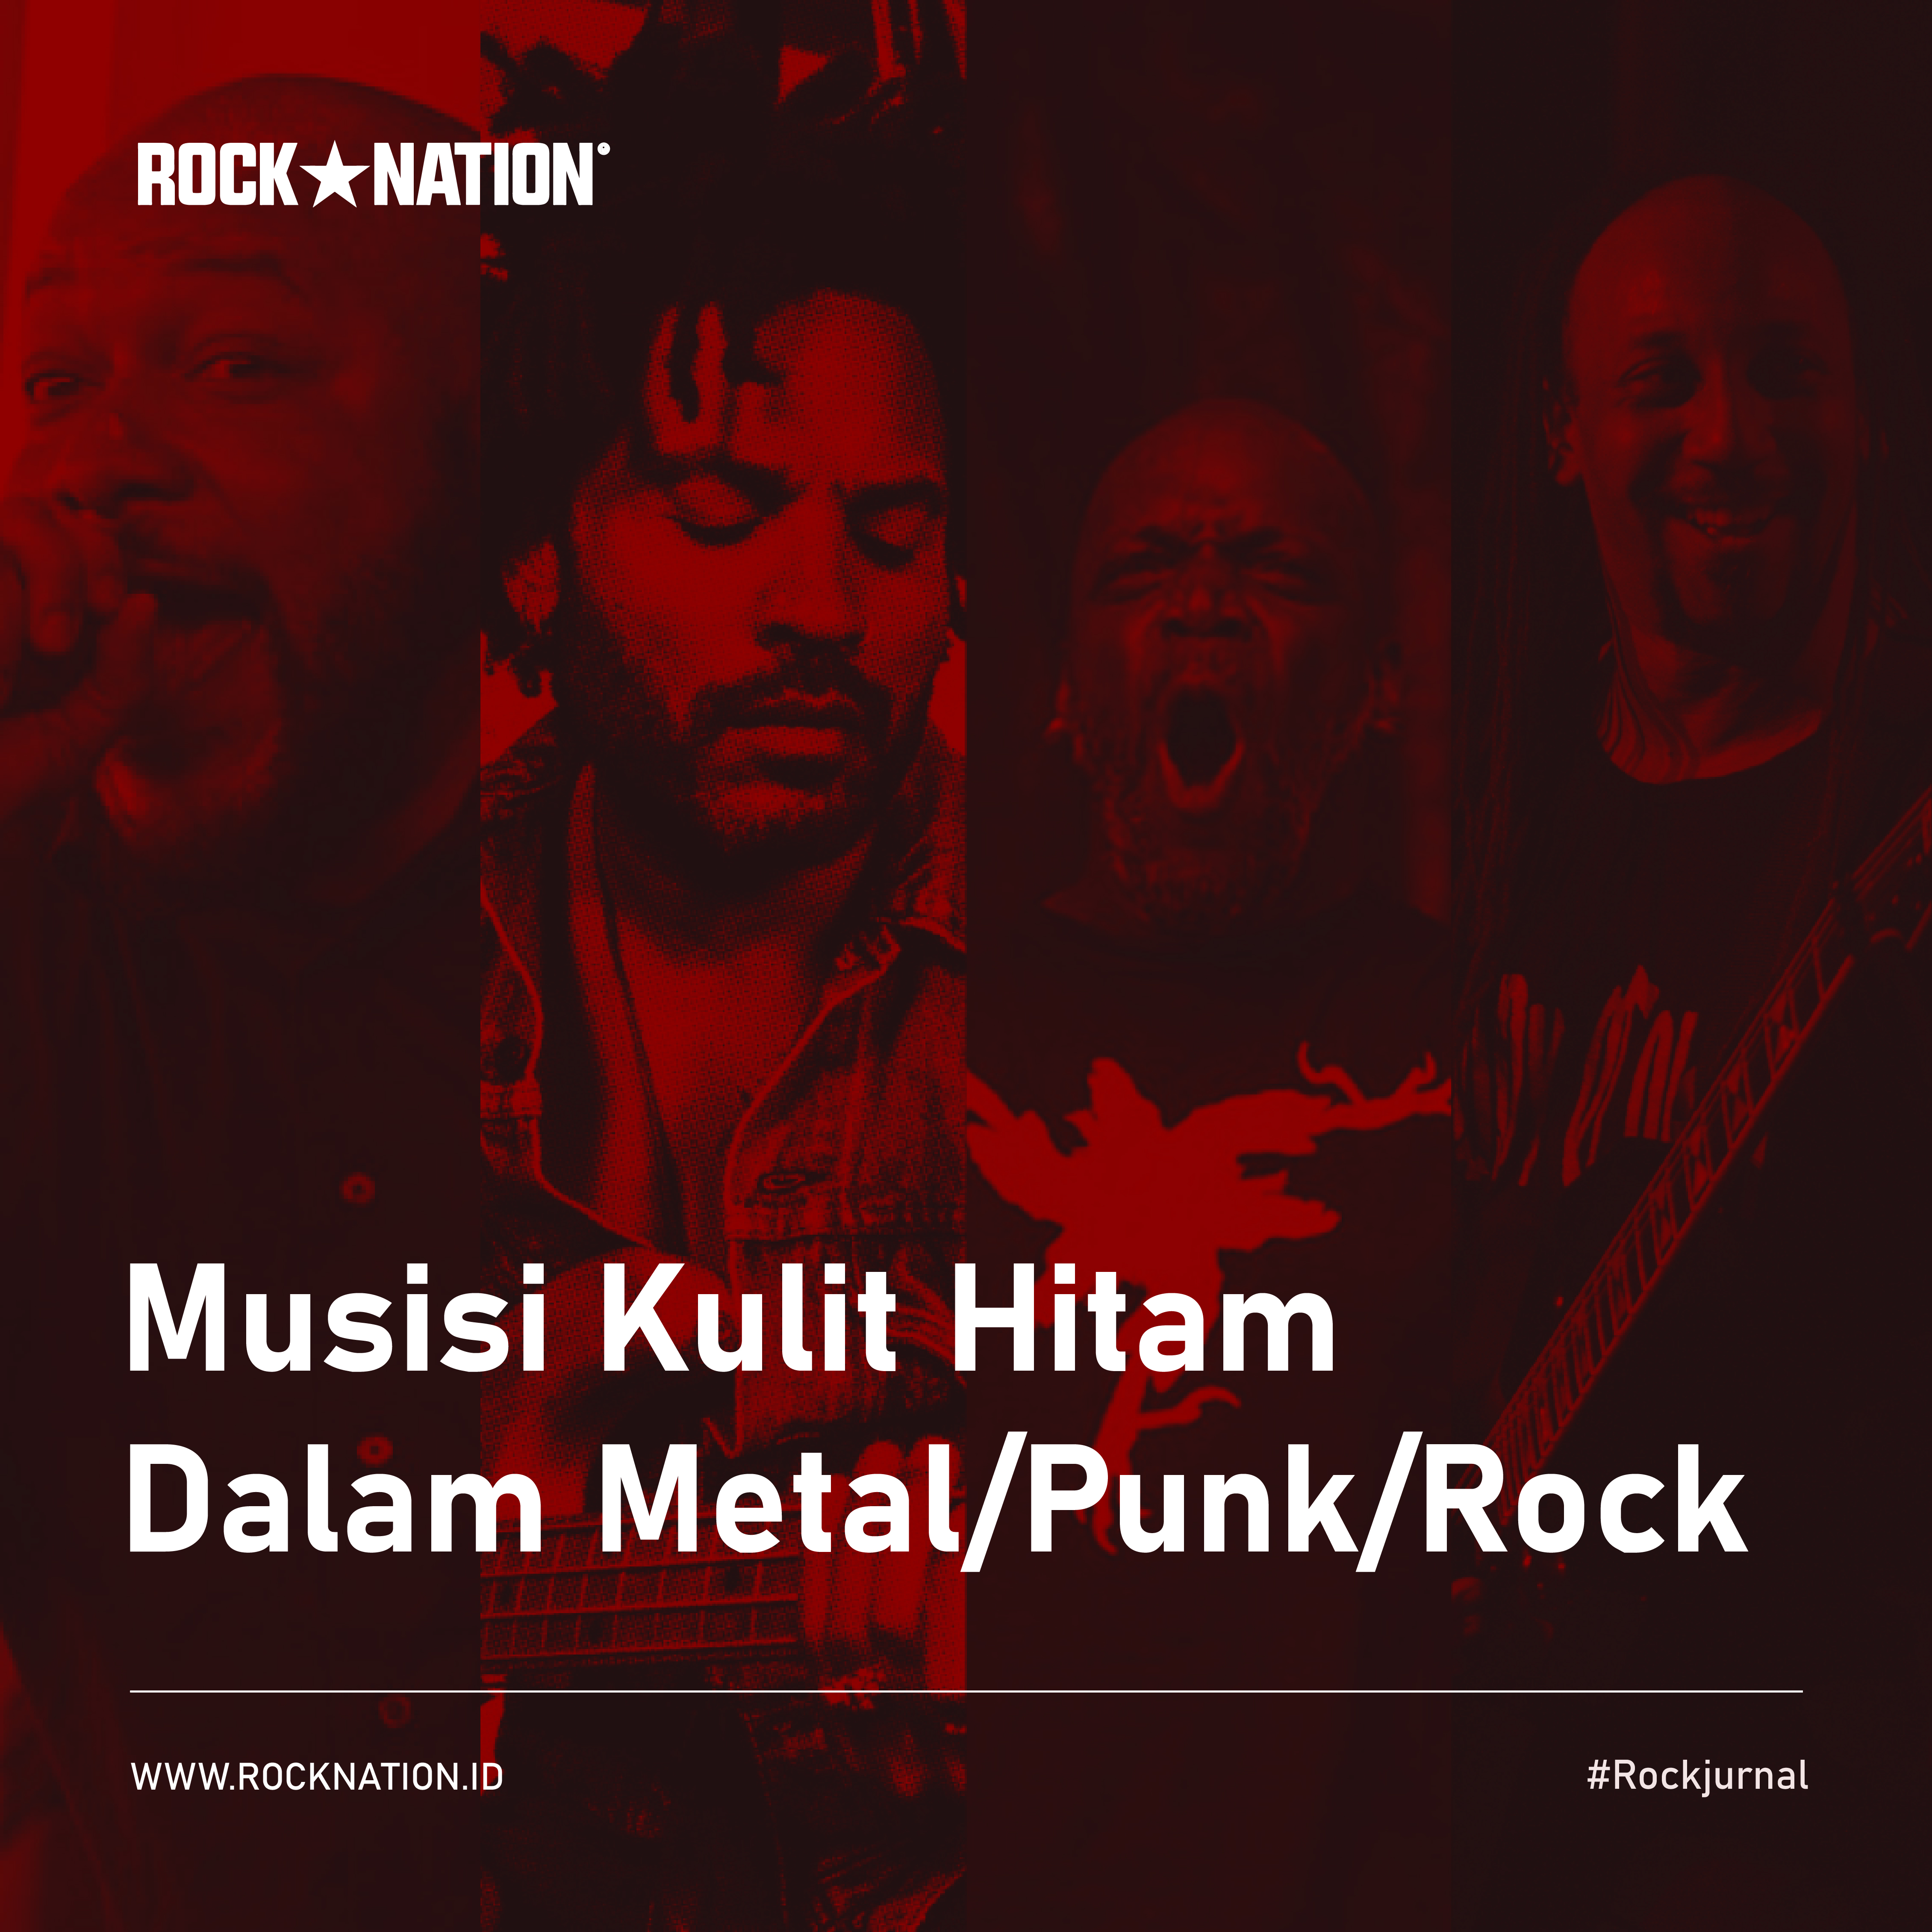 Musisi Kulit Hitam Dalam Metal, Punk dan Rock image